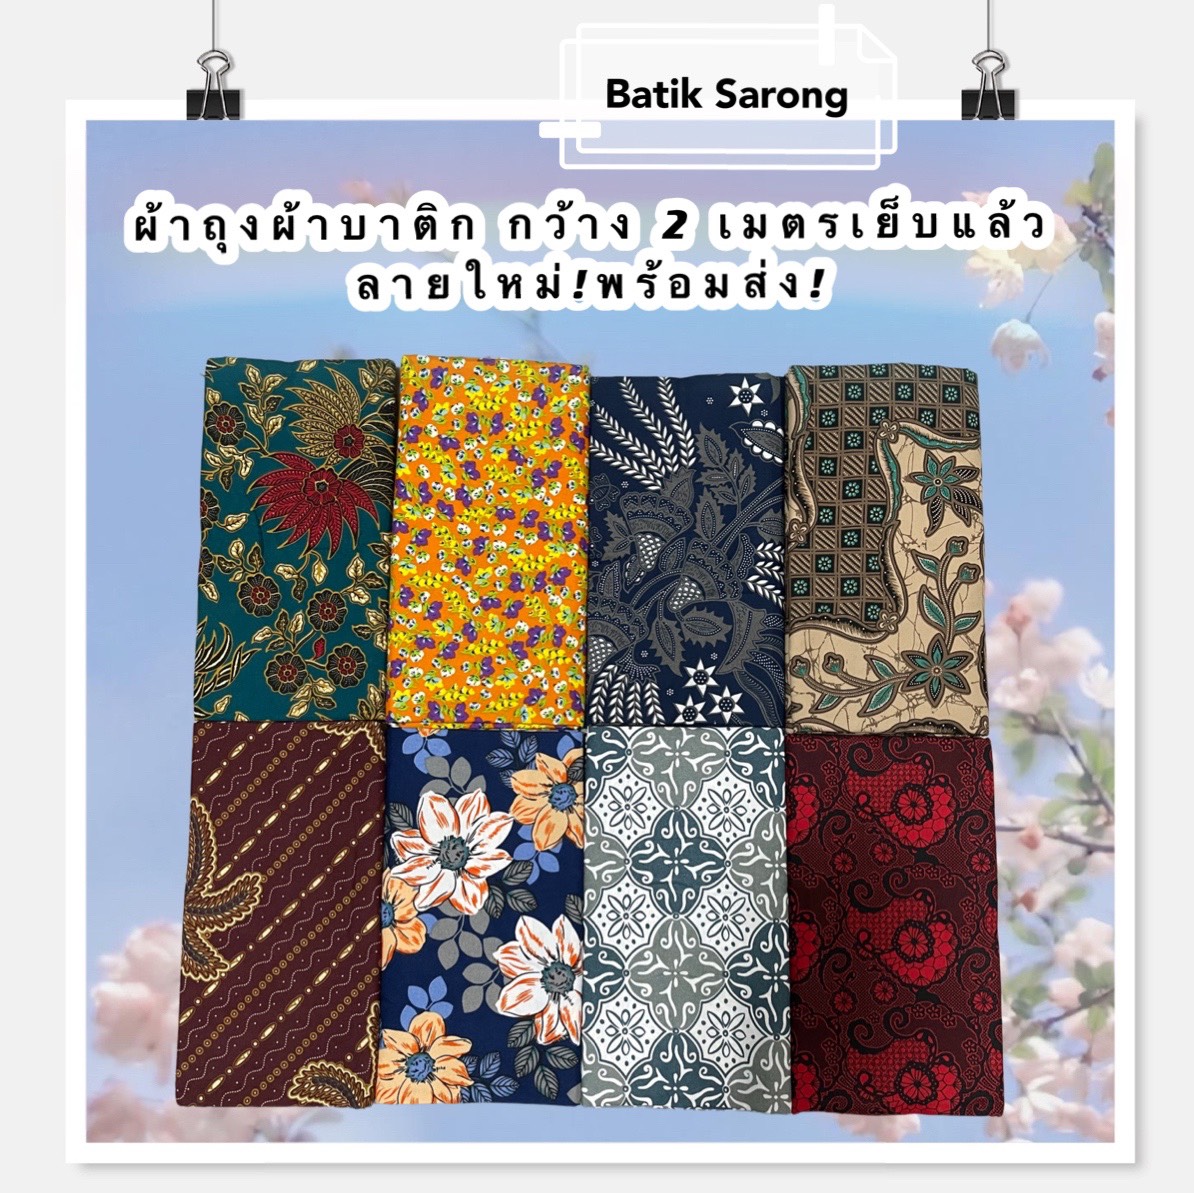 Batik Sarong ผ้าถุง ผ้าถุงคุณภาพดี ผ้าบาติก BATIK กว้าง 2 เมตร เย็บเรียบร้อย ลายใหม่ที่สุด ผ้าถุงคุณภาพดี ผ้าถุงลายไทย ผ้าบาติก